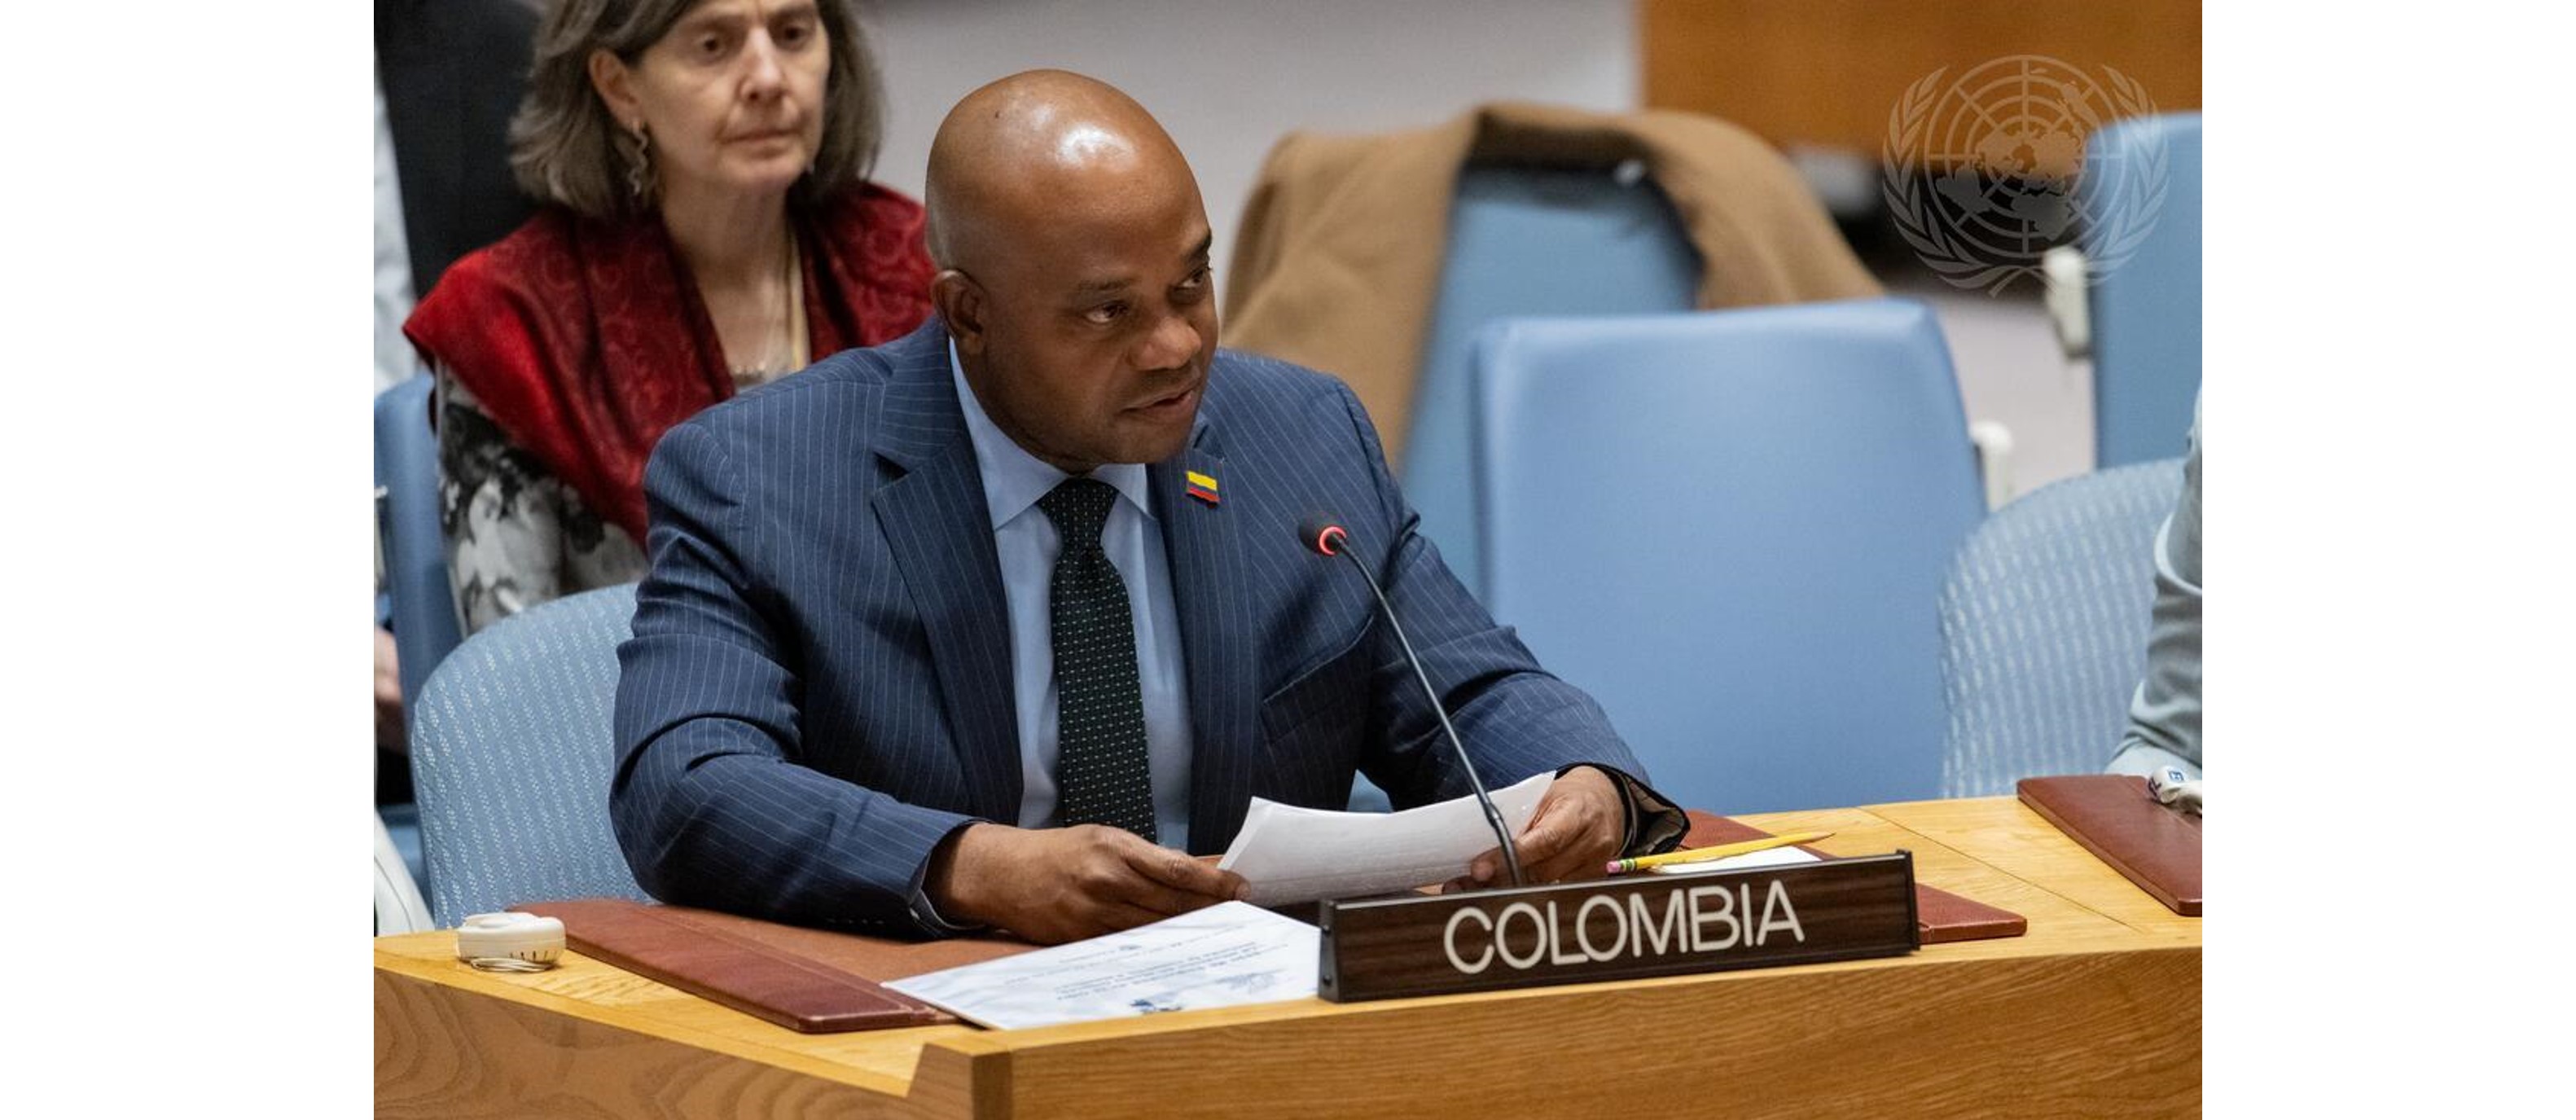 “Colombia viene a hablar de soluciones para la paz”: Luis Gilberto Murillo, Canciller encargado, en debate del Consejo de Seguridad sobre la situación del Medio Oriente, incluida Palestina